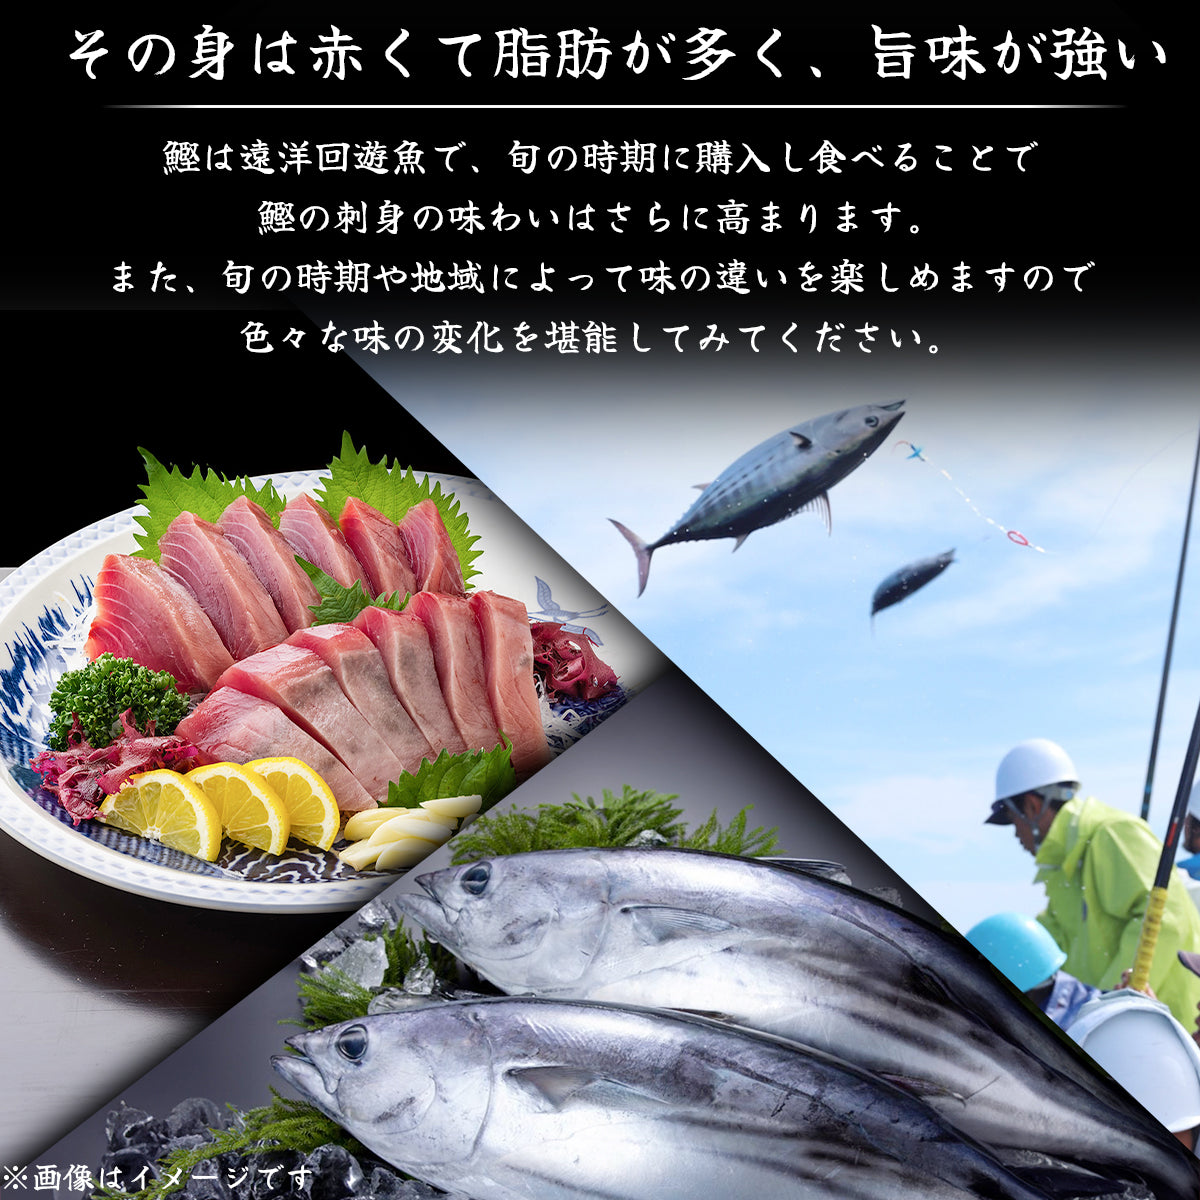 土佐黒潮水産特選、高知県沖で捕れた新鮮なカツオの刺身、独特の赤身と豊かな旨味が特徴